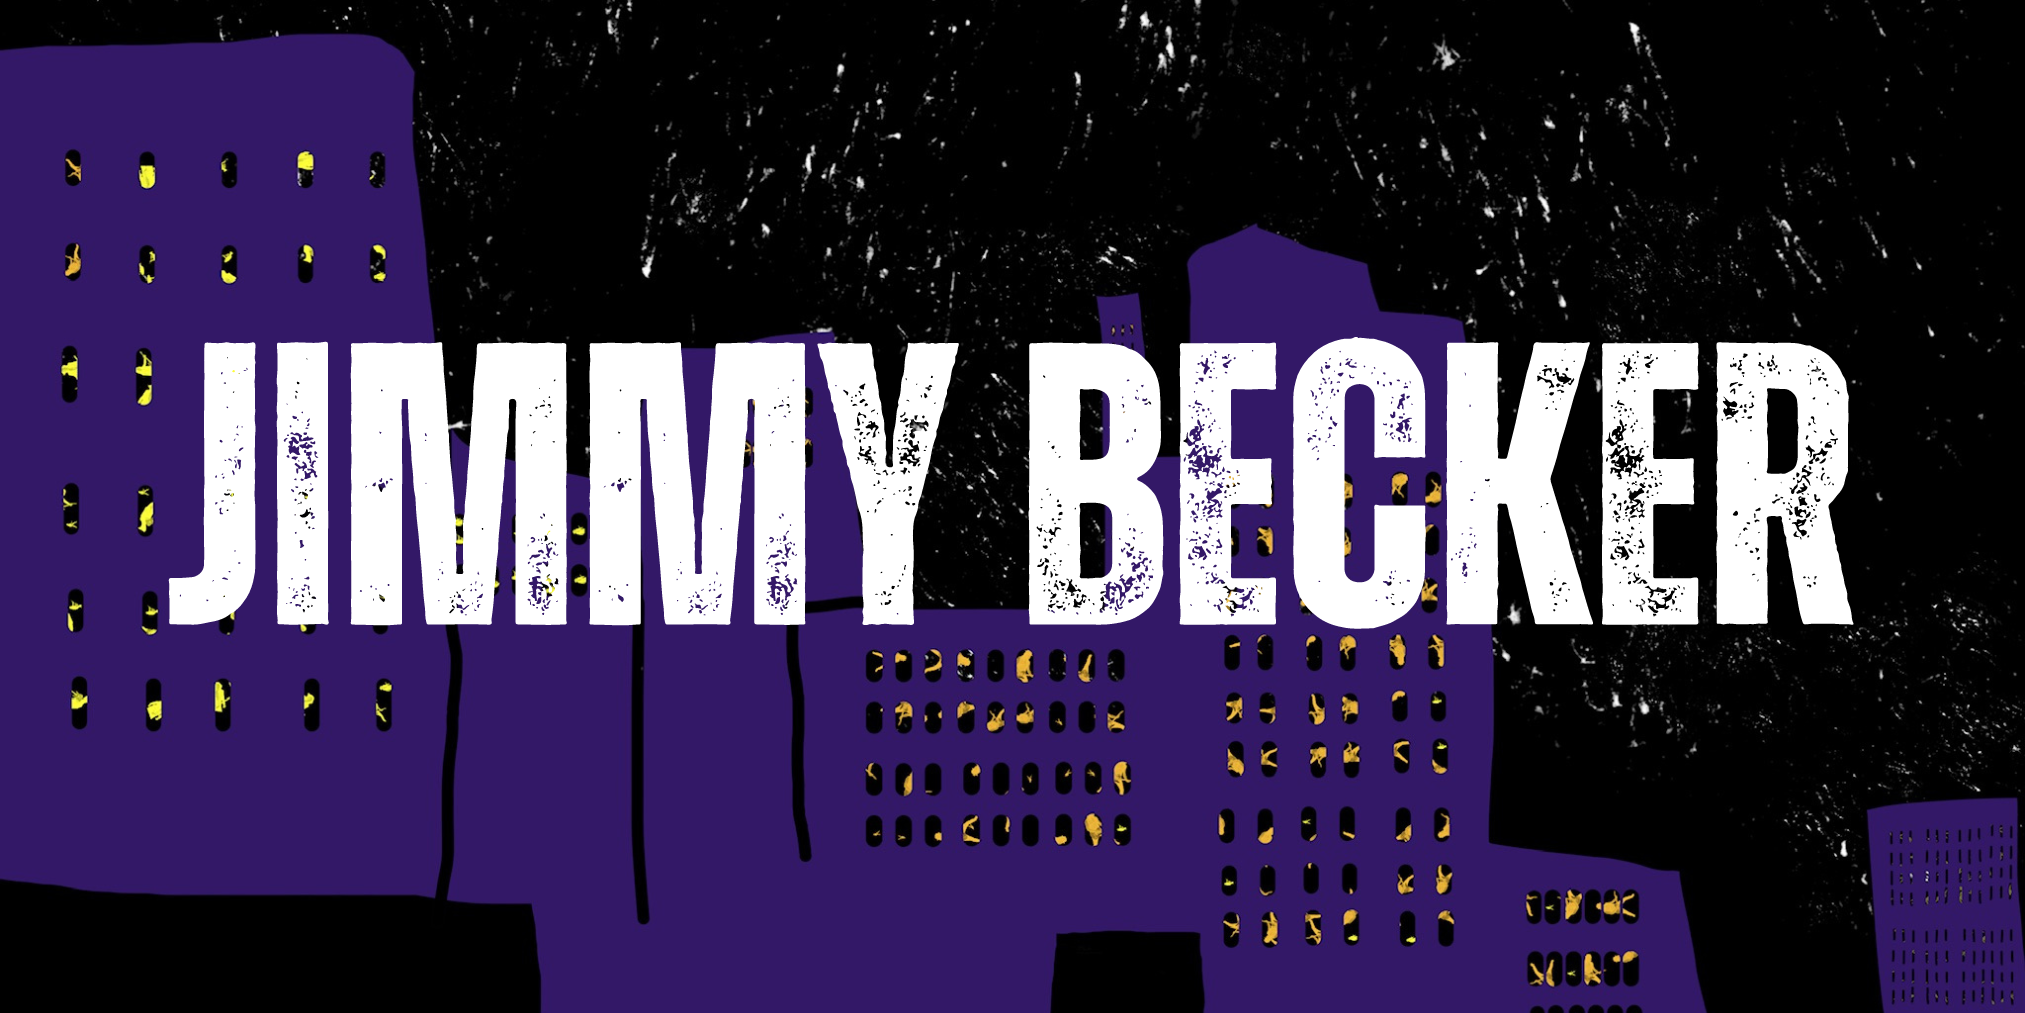 Jimmy Becker